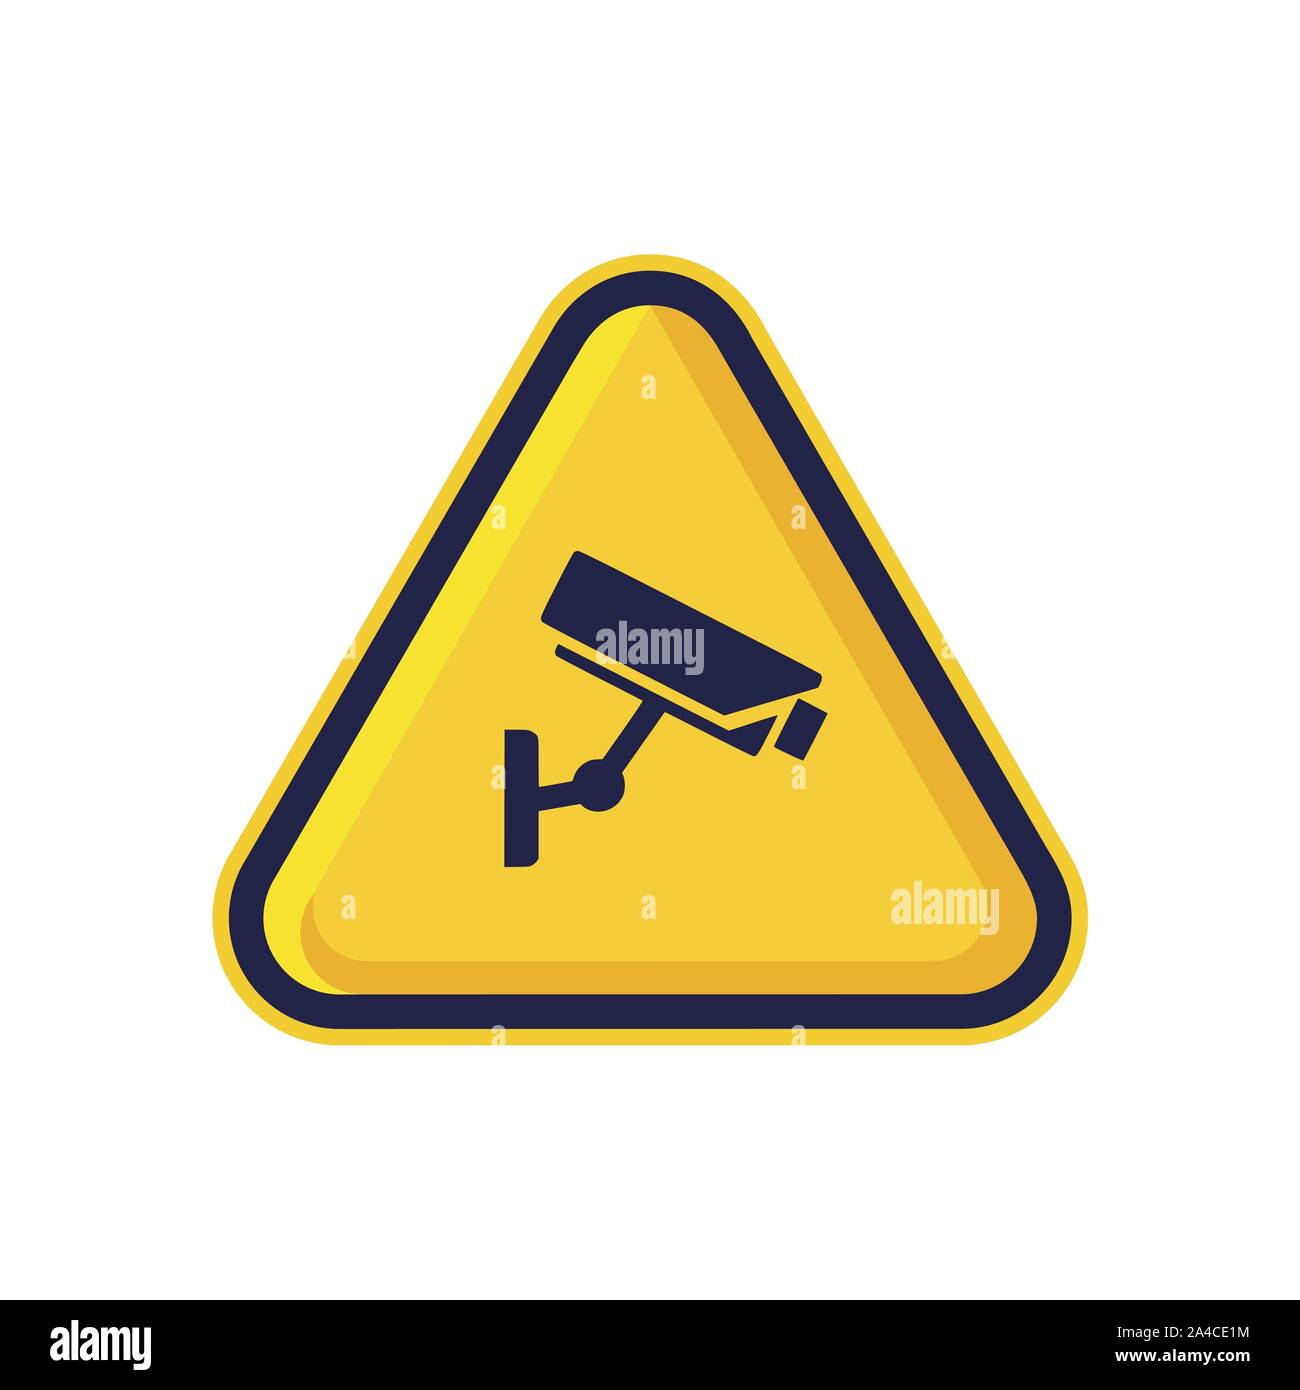 warning cctv camera logo